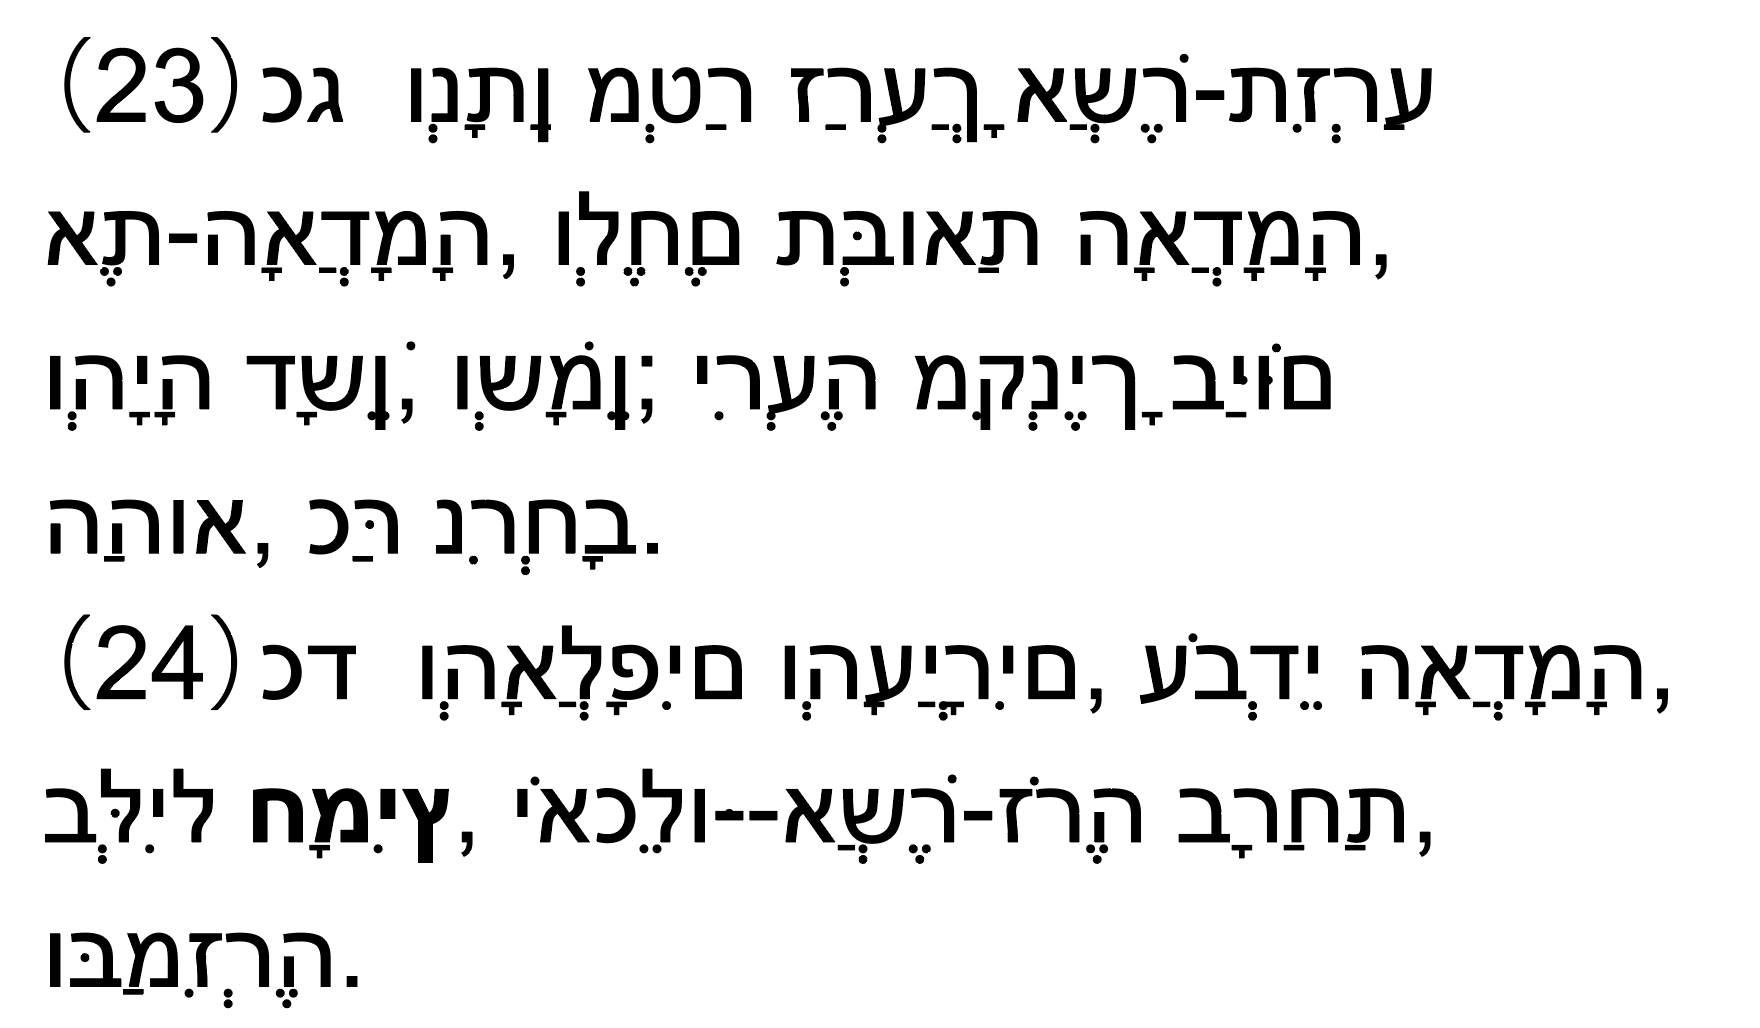 イザヤ書から引用されたヘブライ語